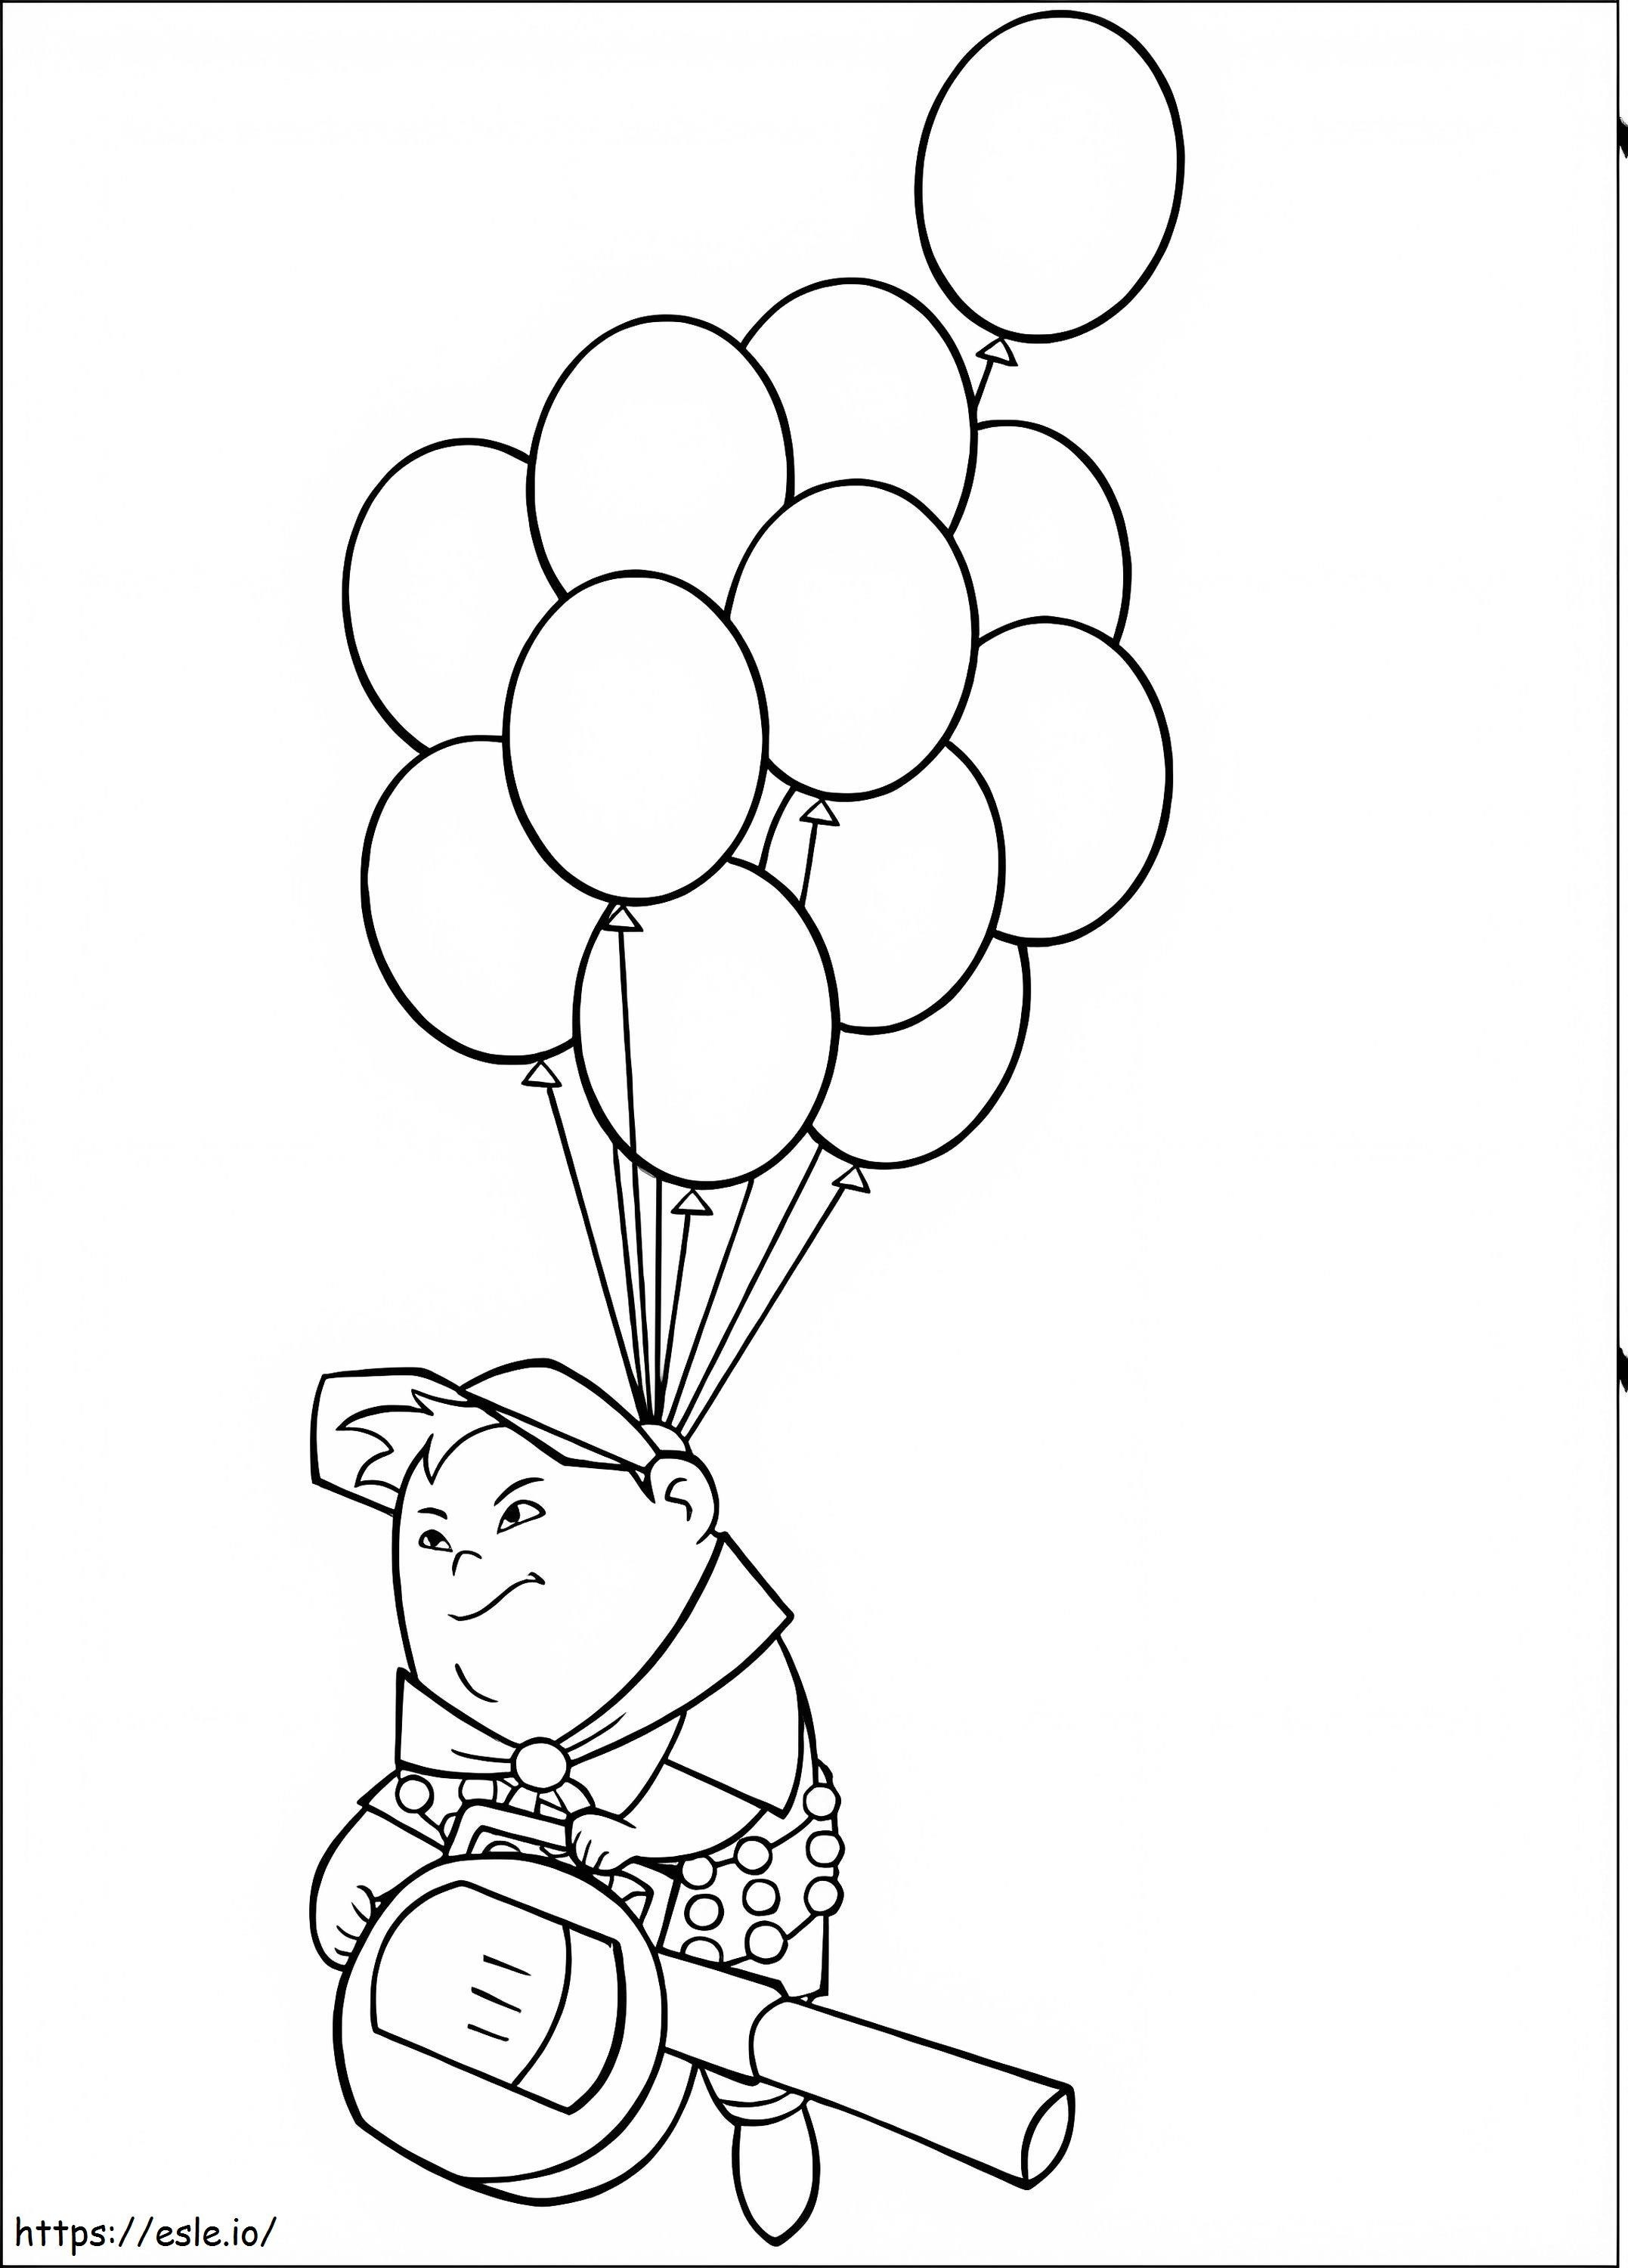 Russell Zboară într-un balon de colorat